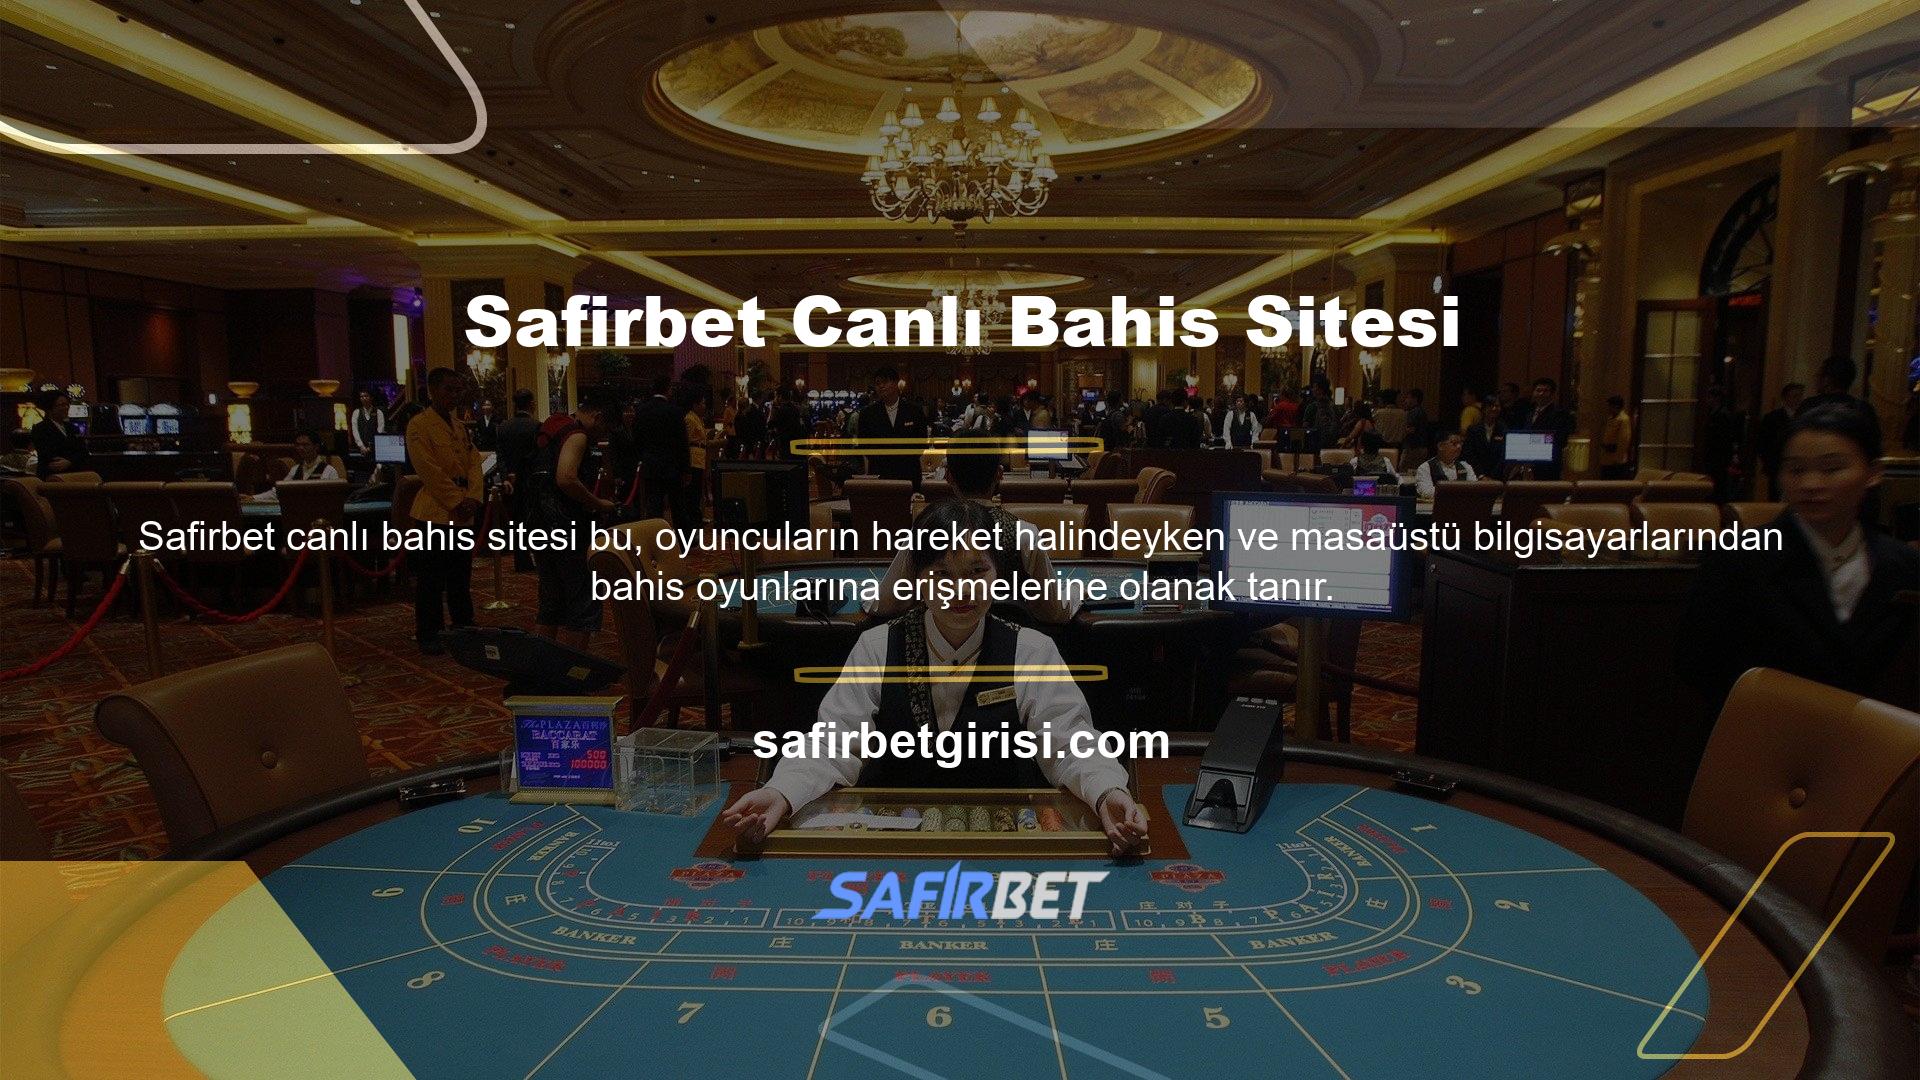 Bu amaçla Safirbet TV, cep telefonunuzda oyun oluşturmanıza ve keyfini çıkarmanıza olanak tanıyan bir mobil uygulama hizmeti sunmaktadır